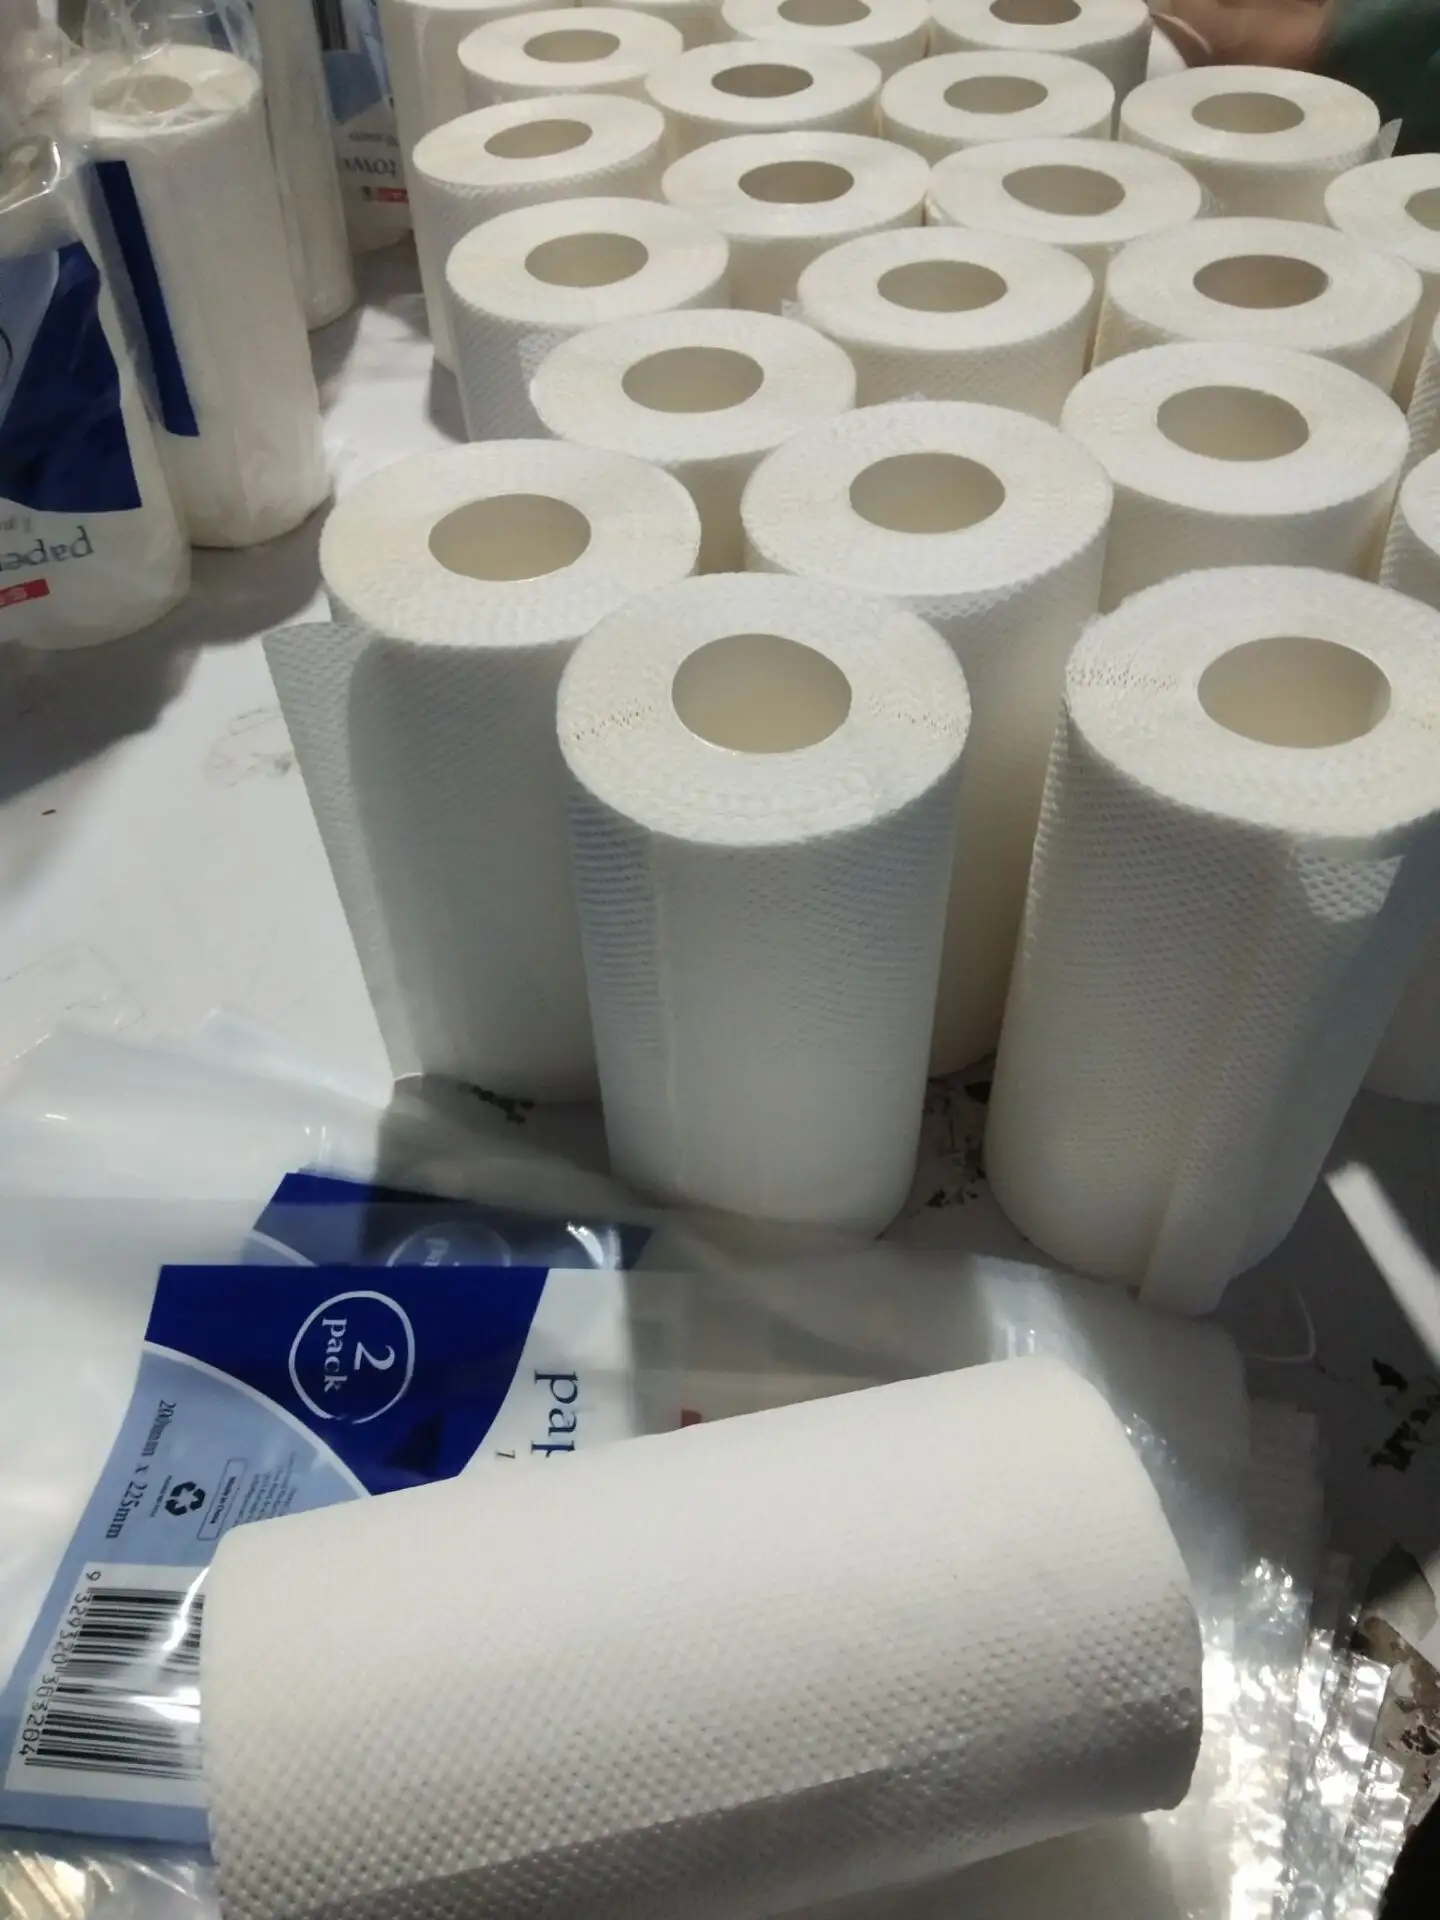 Keuken Papierrol Handdoek Bamboe Pulp 2020 Nieuwe Toiletpapier, Keuken Papieren Handdoek Keuken Kamer 100% Recycle Pulp, bamboe Pulp 2 Ply